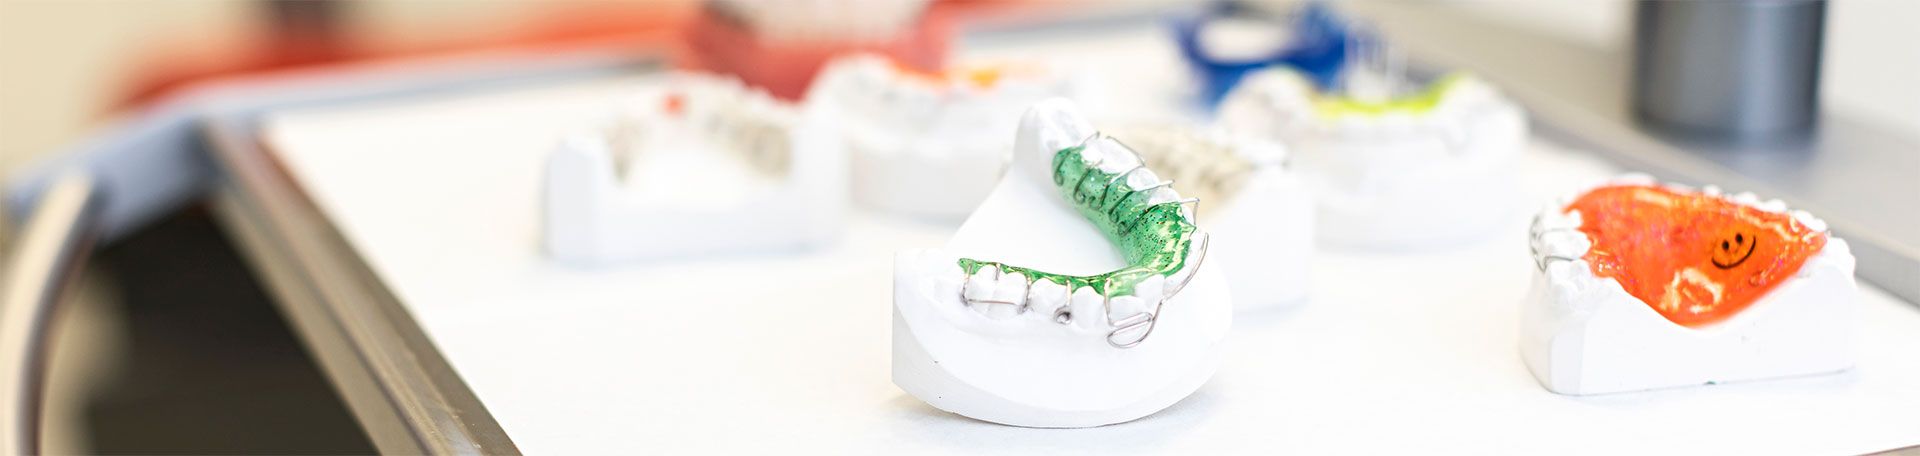 Illustrationsfoto Kieferorthopädie: Gebisse mit rausnehmbaren Zahnspangen